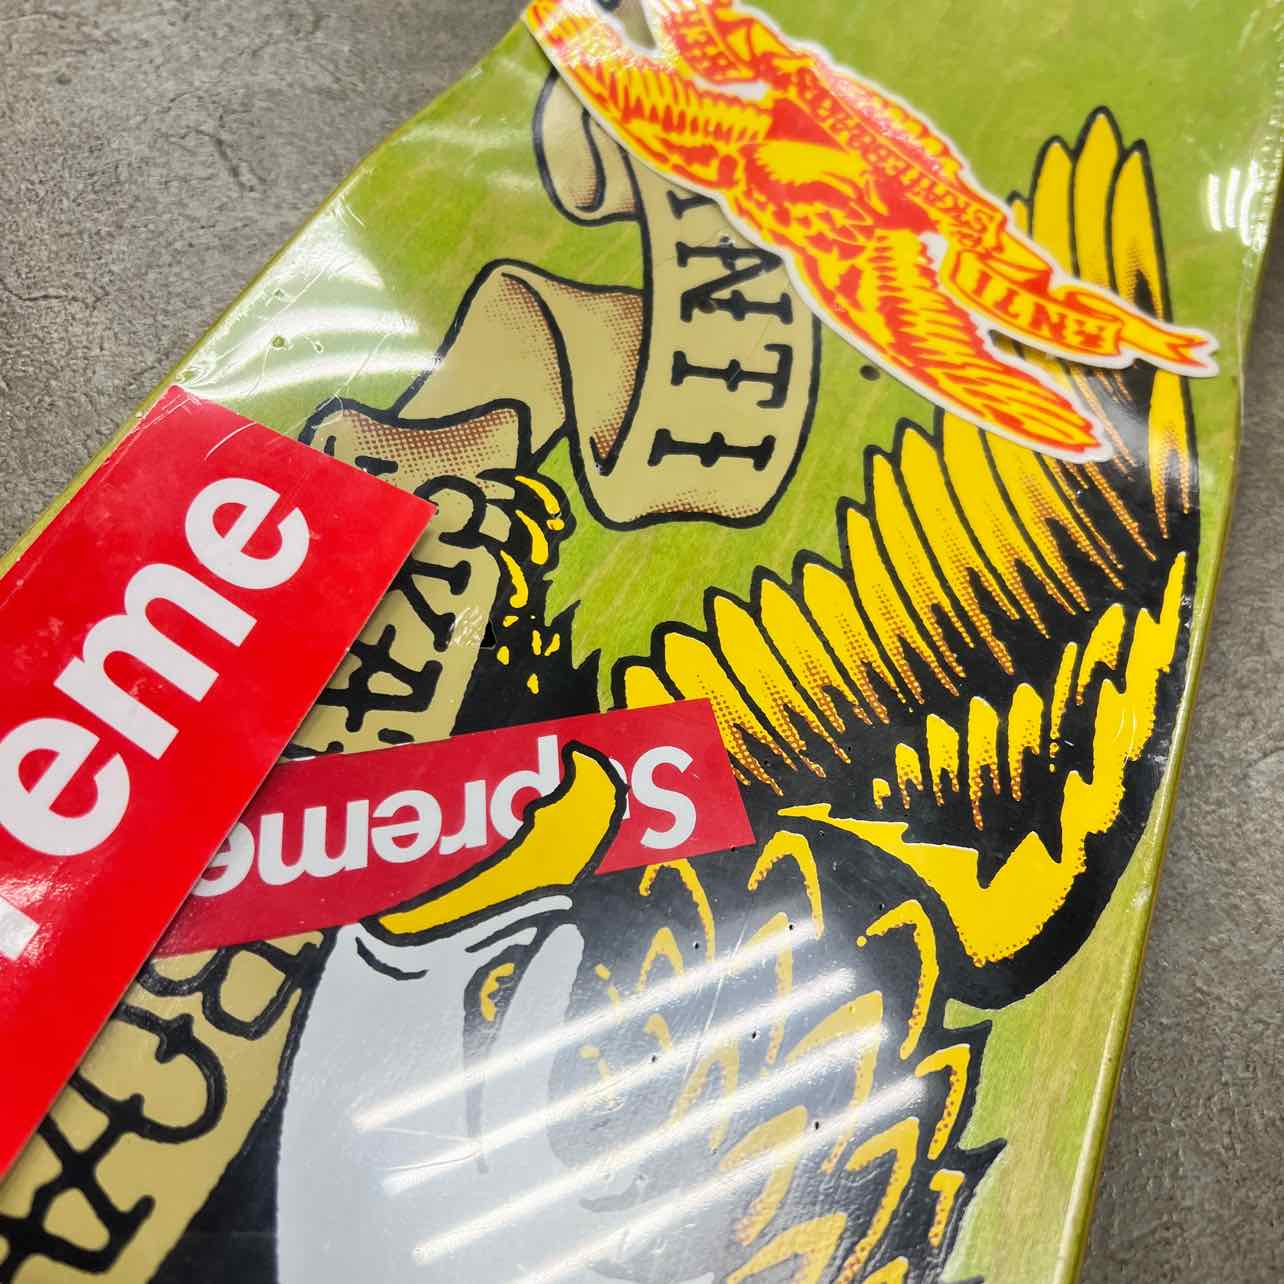 Supreme Skateboard "ANTIHERO" New